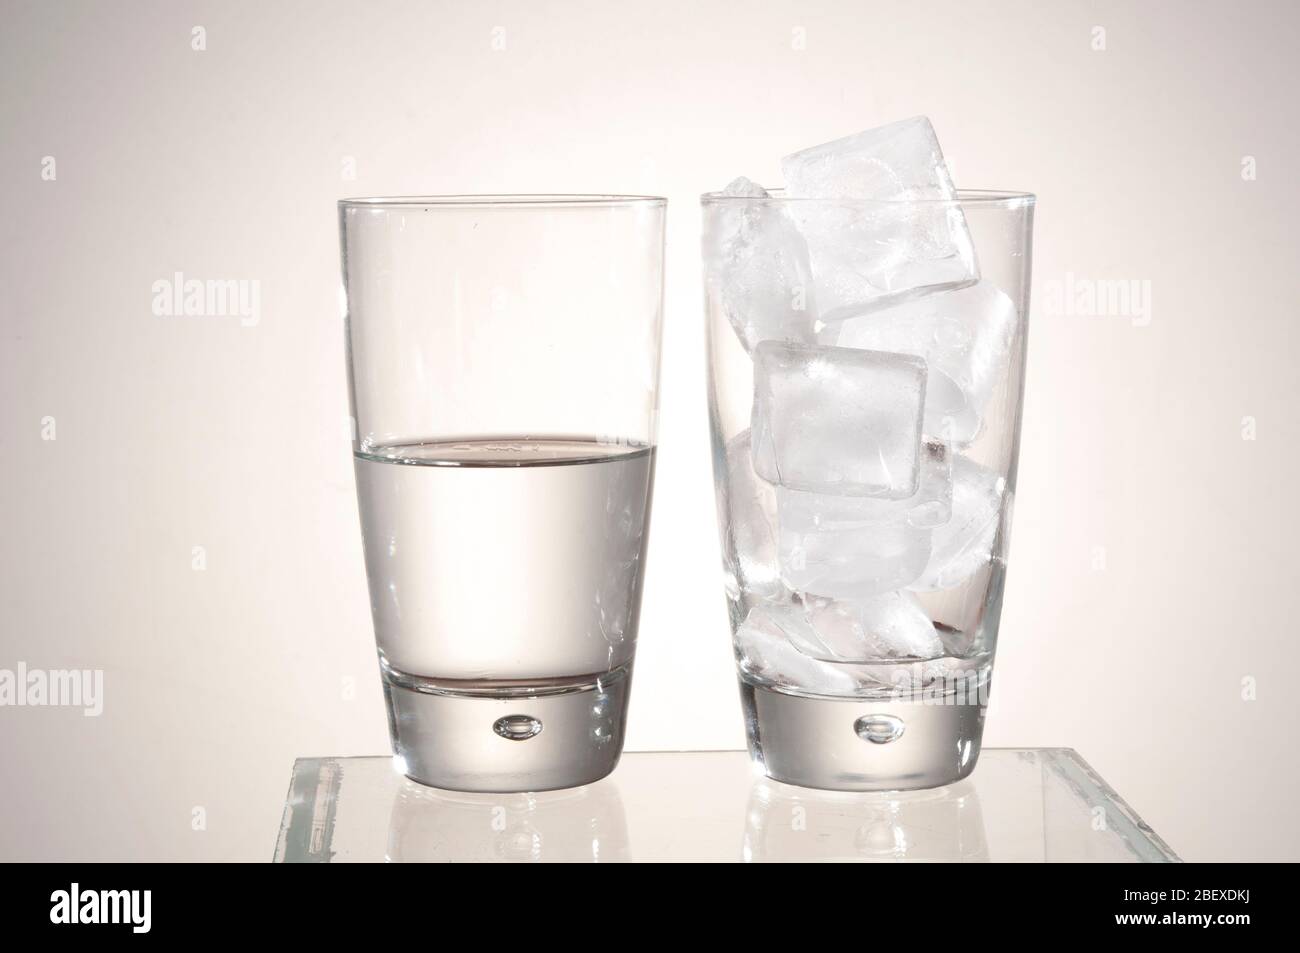 Il concetto di fusione del ghiaccio mostra che un bicchiere pieno di ghiaccio si fonde per essere meno acqua nell'altro bicchiere. Foto Stock